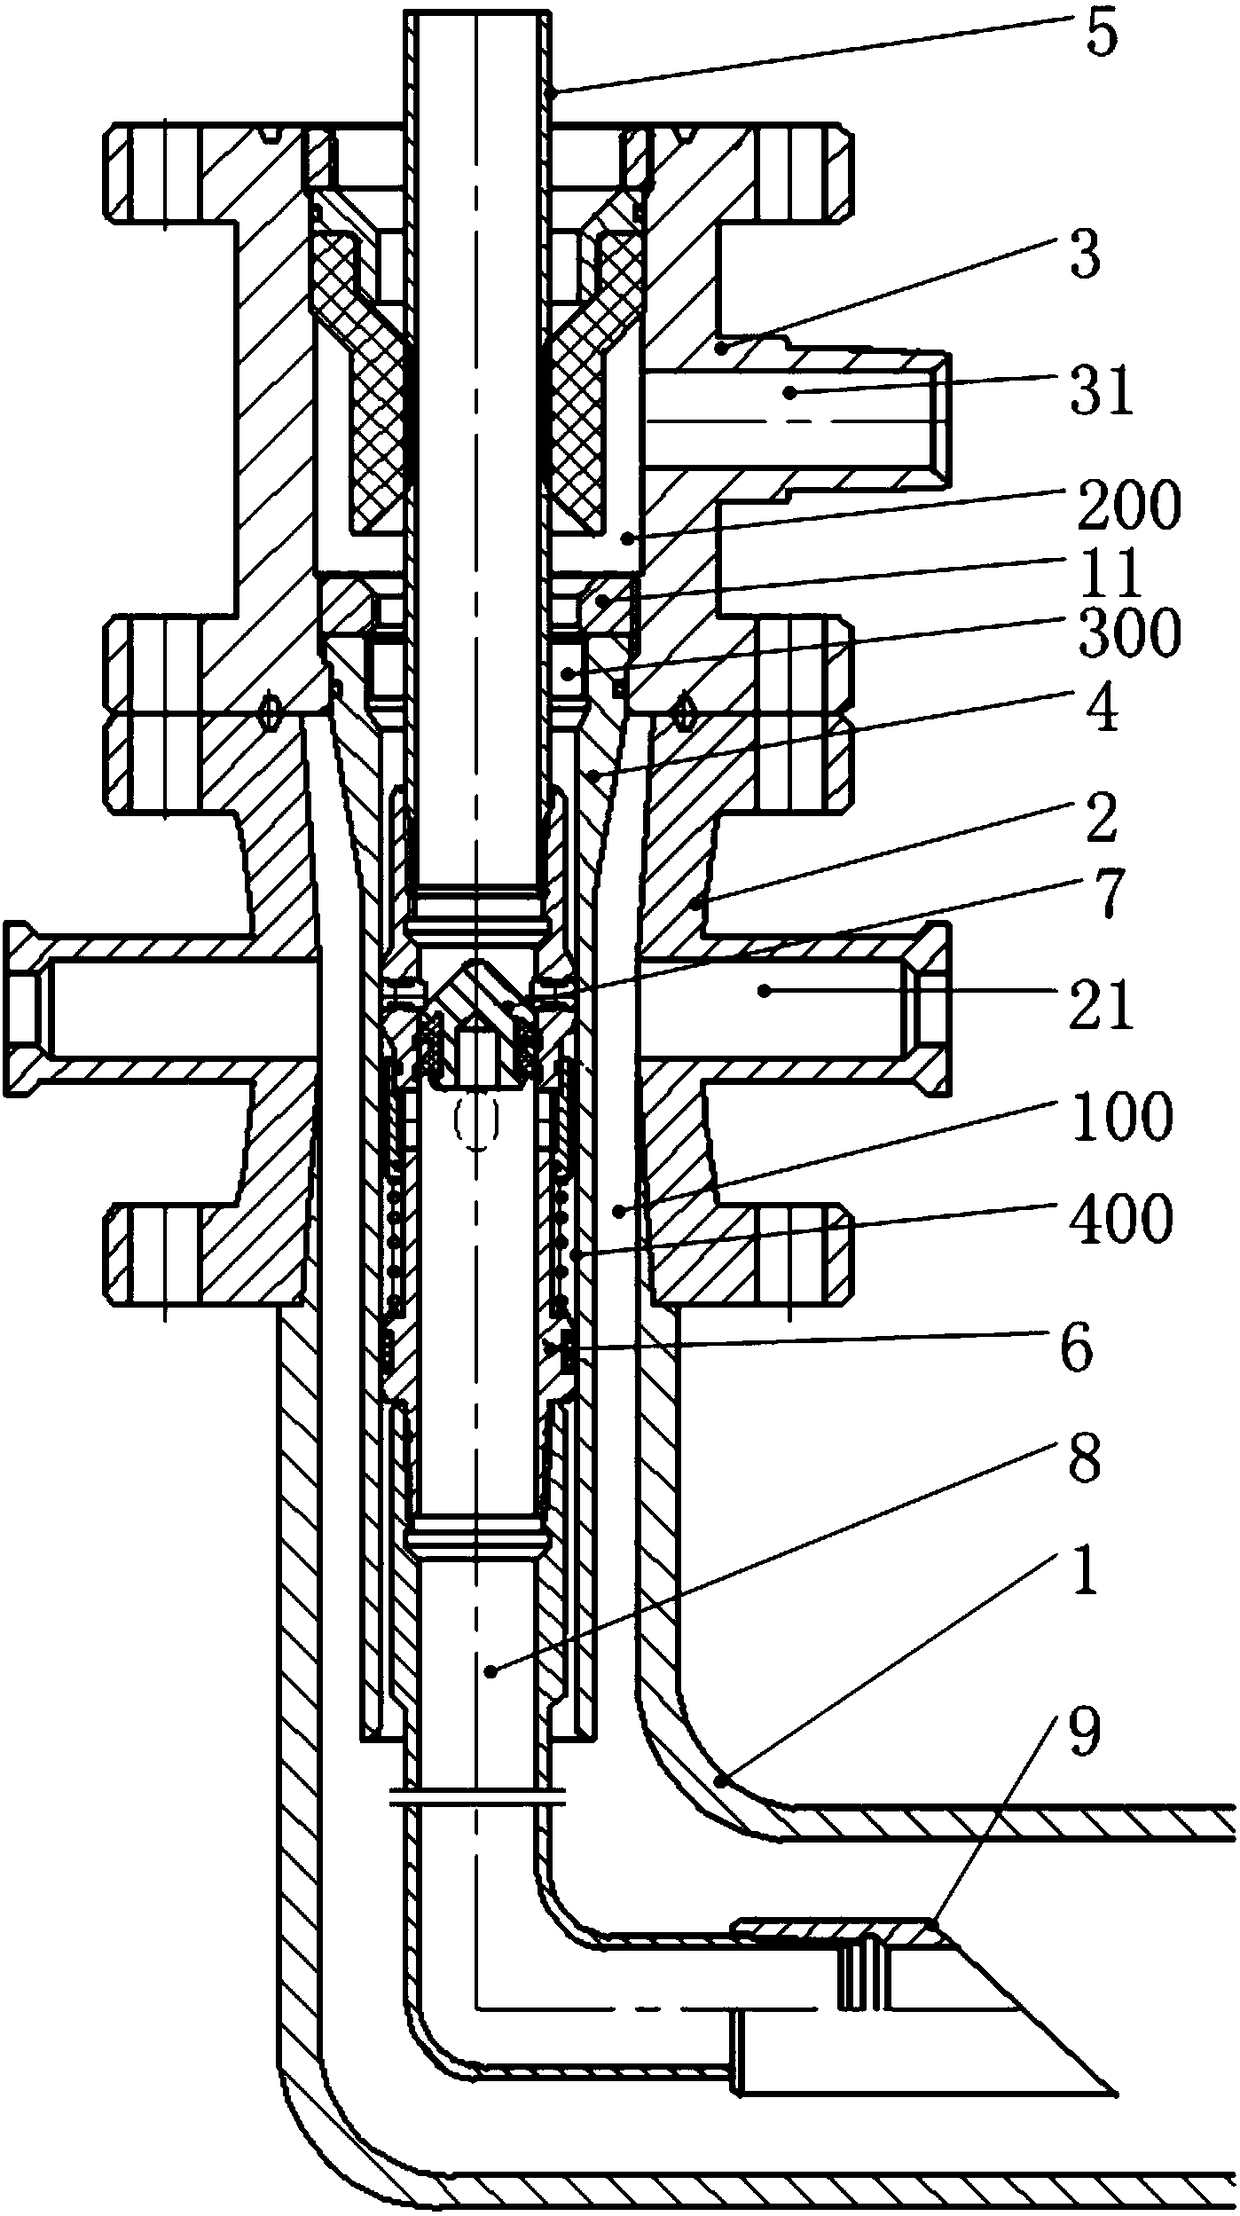 Reverse-circulation sand-flushing pipe column